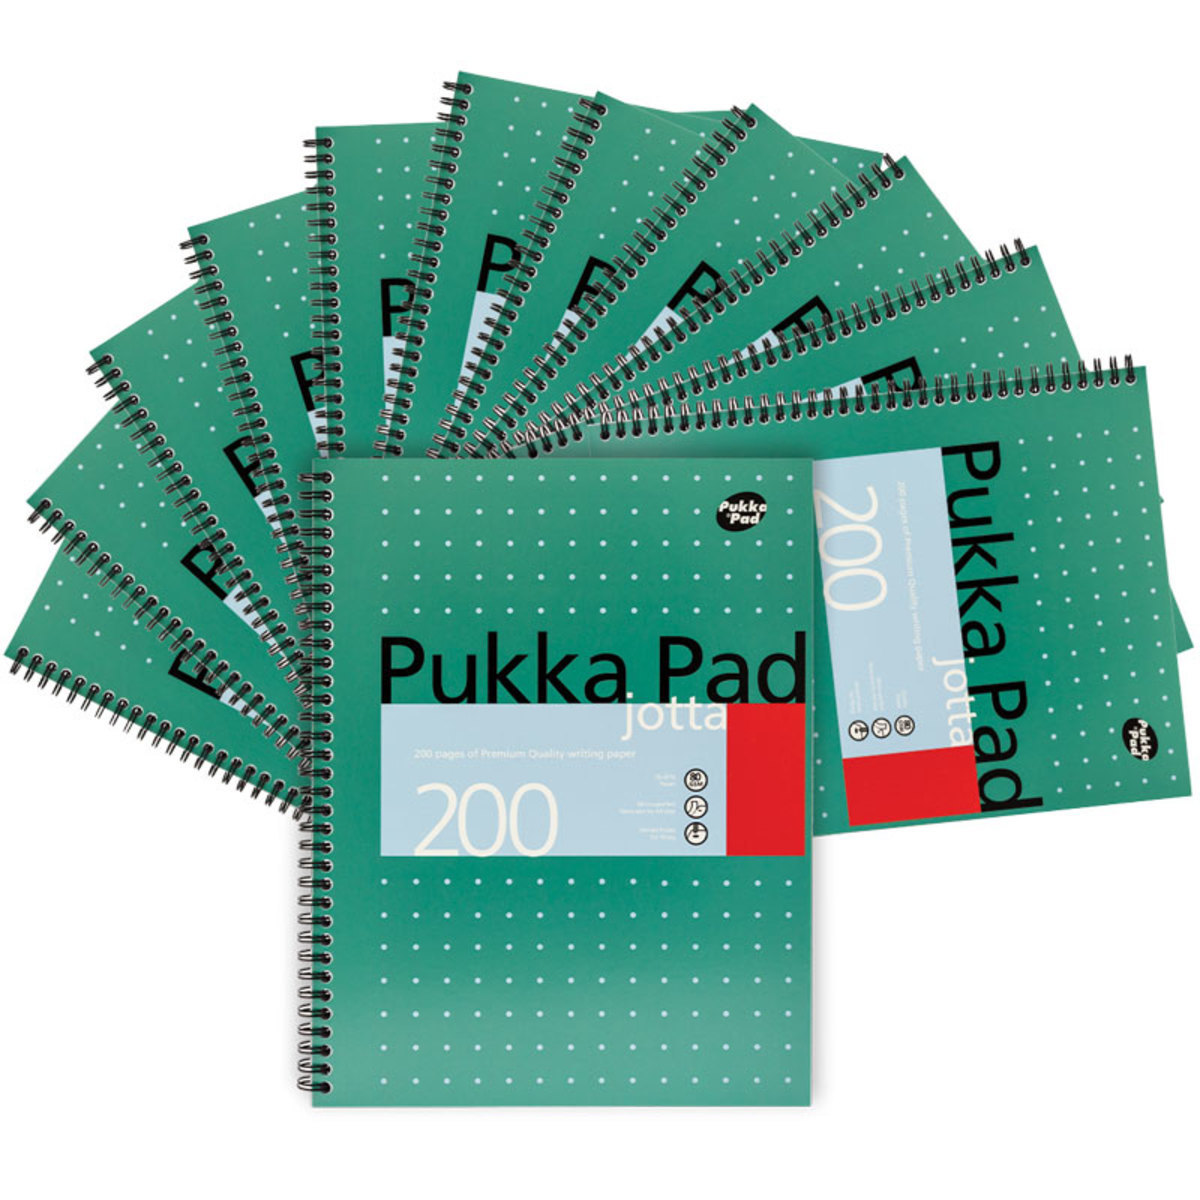 Pukka Pad Lot de 10 pochettes transparentes A6 imprimées pour